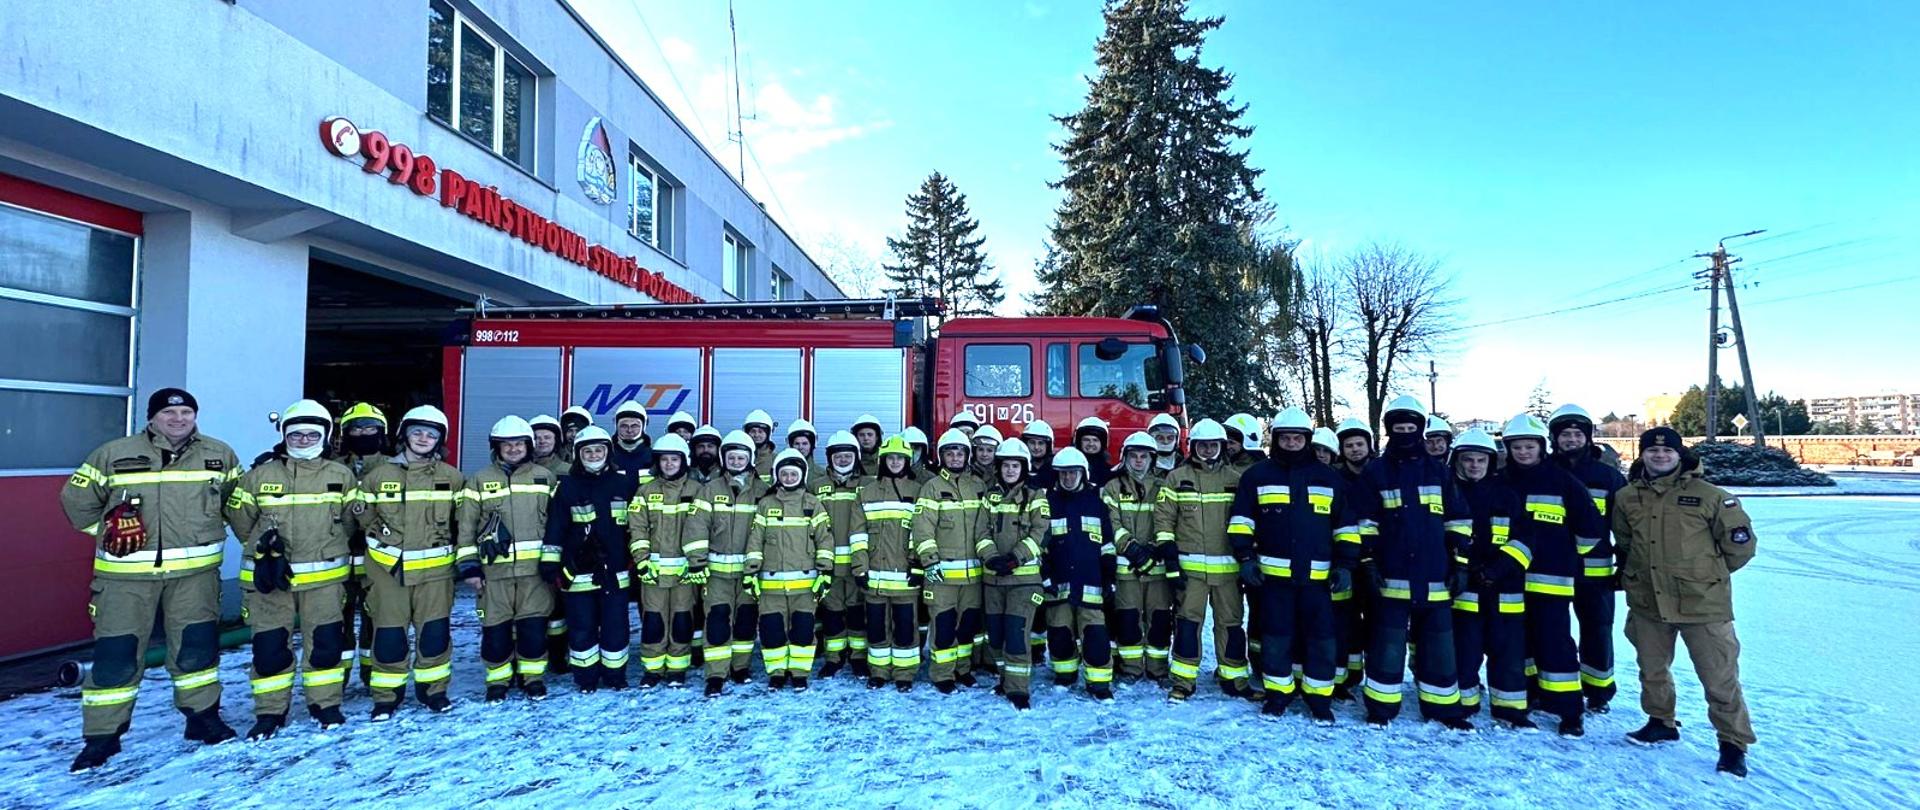 W dniu 26 listopada 2023 r. w Komendzie Powiatowej Państwowej Straży Pożarnej w Przasnyszu zakończyło się Szkolenie podstawowe dla strażaków ratowników Ochotniczych Straży Pożarnych z terenu powiatu przasnyskiego.
Szkolenie obejmowało 136 godzin zajęć teoretycznych i praktycznych oraz dodatkowo dla wszystkich druhów przeprowadzono szkolenie doskonalące z zakresu współdziałania z Lotniczym Pogotowiem Ratunkowym. Tematyka całego bloku szkoleniowego dotyczyła m.in.: pracy w aparatach ochrony dróg oddechowych, działań podczas zdarzeń z materiałami niebezpiecznymi, gaszenia pożarów wewnętrznych i zewnętrznych, obsługi mechanicznych urządzeń ratowniczych, sprawiania drabin, prowadzenia korespondencji radiowej. Celem szkolenia było przygotowanie strażaków do sprawnego i bezpiecznego wykonywania zadań ratowniczo – gaśniczych, w tym do samodzielnego wykonywania złożonych czynności w ramach zastępu.
Dzięki pomocy ze strony Firmy Pana Adama Karolaka oraz Autodienst - Warsztat Samochodowy Galewski Jerzy, którzy dostarczyli wraki pojazdów udało się przeprowadzić szkolenie z zakresu działań ratownictwa technicznego.
Ponadto, strażacy uczestniczący w szkoleniu przeszli test w komorze dymowej w Komendzie Miejskiej PSP w Ostrołęce, przygotowujące oraz sprawdzające umiejętności ratowników podczas prowadzenia działań ratowniczo-gaśniczych w sprzęcie ochrony układu oddechowego w przypadku występowania dużych obciążeń psychofizycznych.
Egzamin kończący szkolenie, składający się z części teoretycznej oraz praktycznej zdało 39 druhów, w tym 9 kobiet.
Wszystkim nowo upieczonym strażakom życzymy wszystkiego najlepszego oraz tylu powrotów co wyjazdów do akcji.
Opracowanie: kpt. Piotr Kuligowski
Zdjęcia:kpt. Piotr Kuligowski, kpt. Karol Jonczyński, st.str. Cezary Olkowski.
